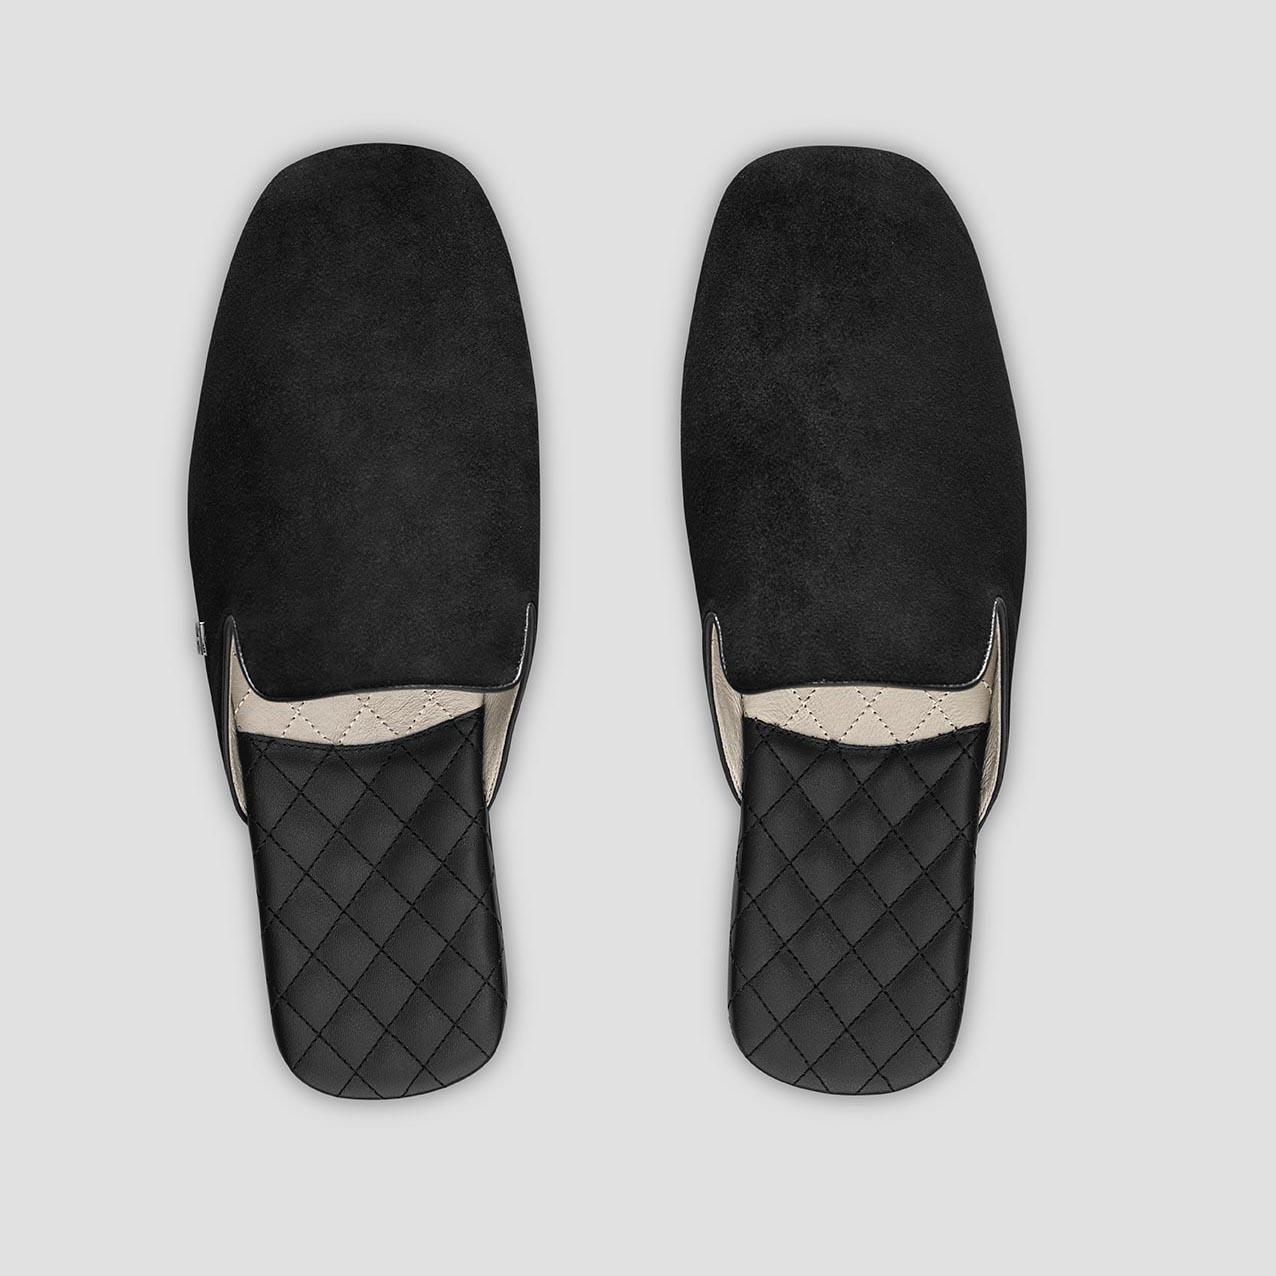 тапочки togas реон черные мужские кожаные размер 40 41 Тапочки Togas Реон черные мужские кожаные, размер 44-45